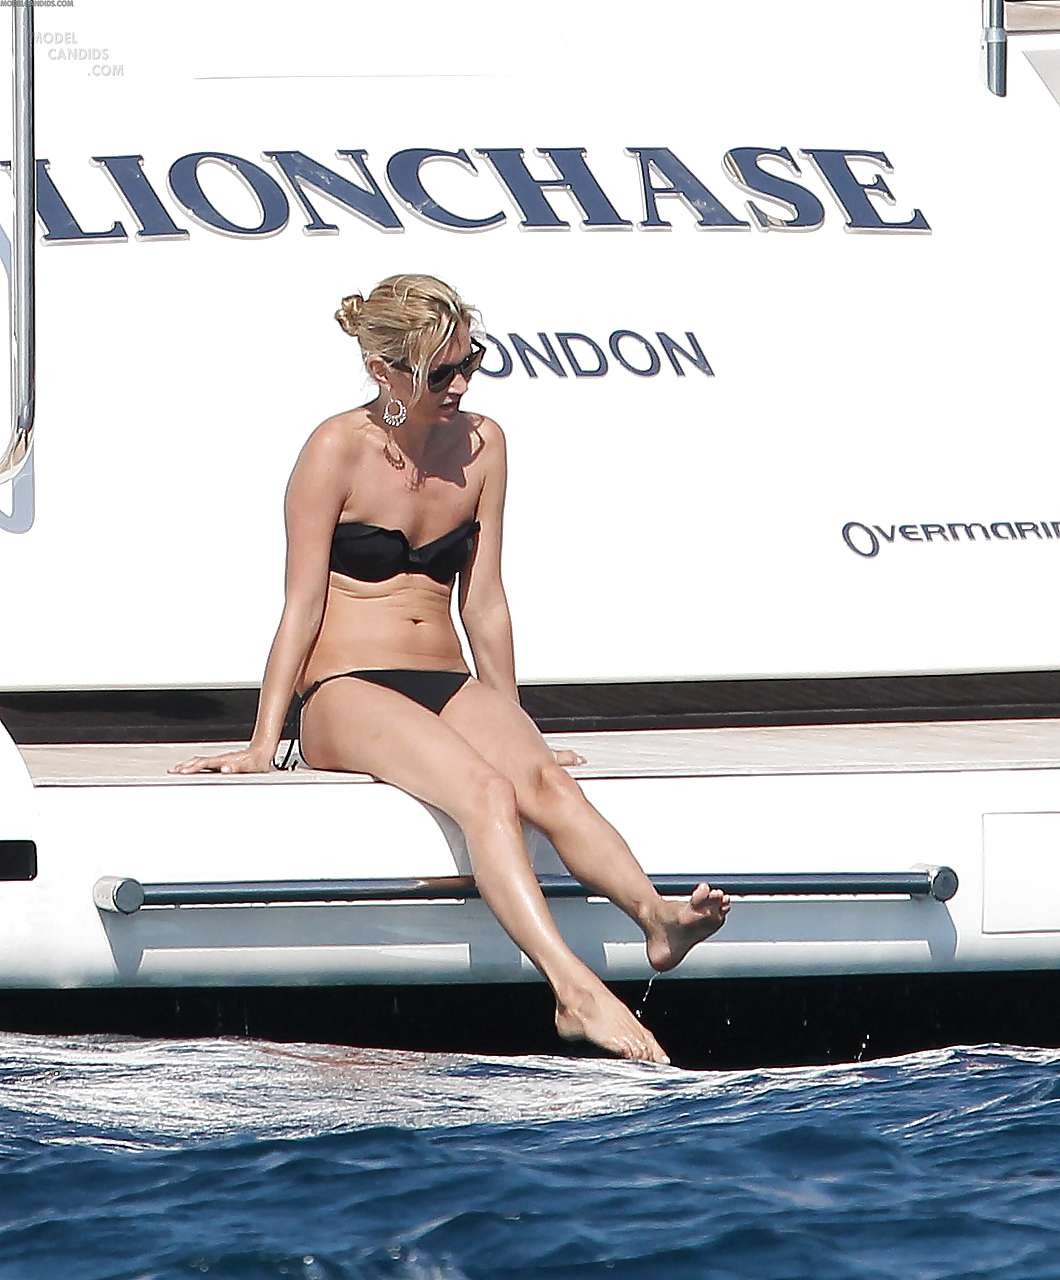 Kate Moss si diverte a prendere il sole in topless sullo yacht catturata dai paparazzi
 #75296443